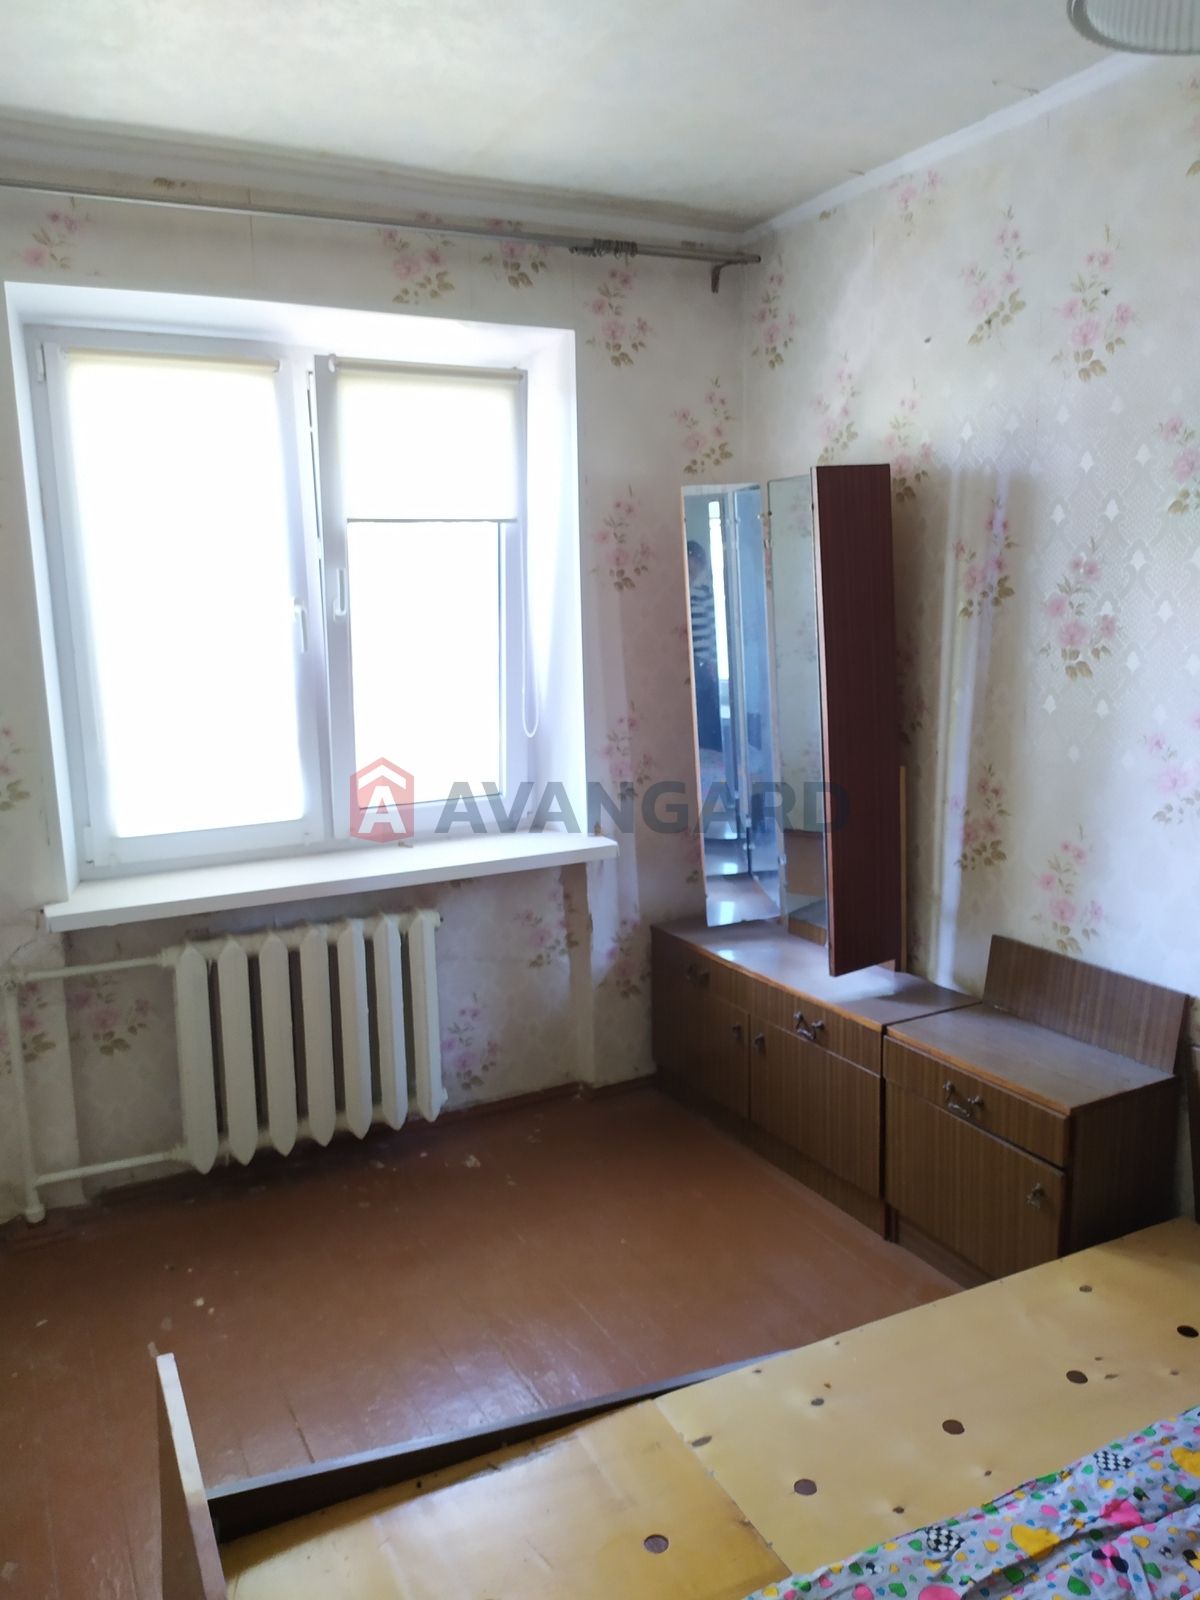 Продам 3-х комнатную квартиру Левый берег Путиловская